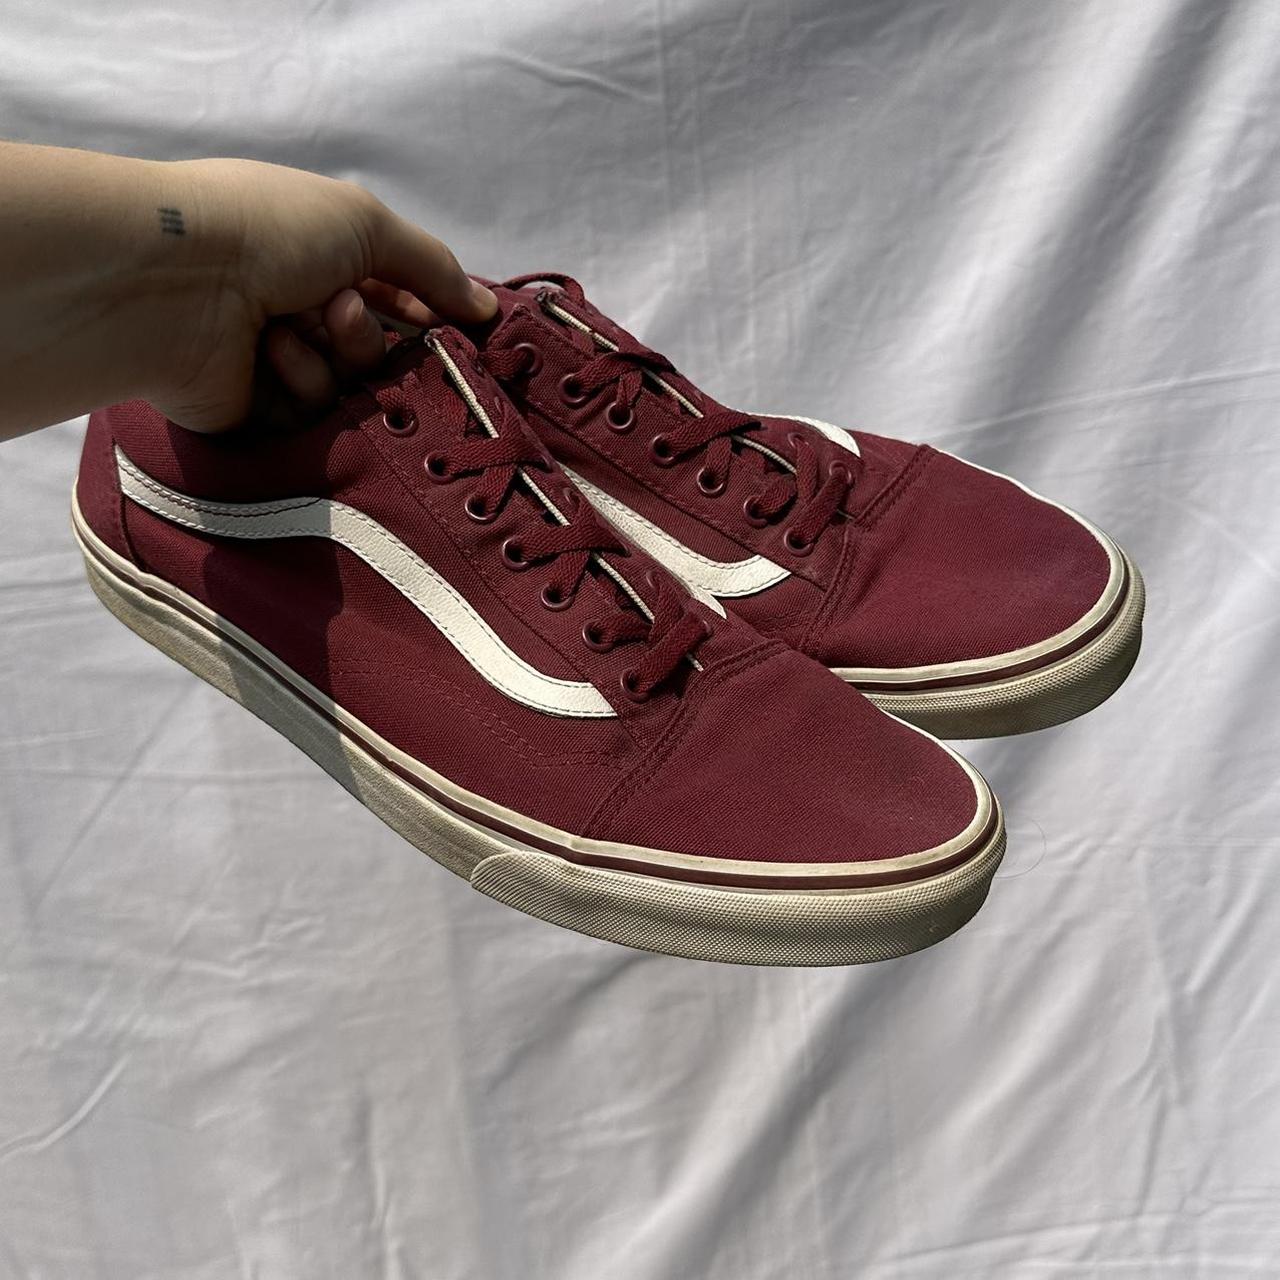 Maroon Vans Skate Shoes, Size Men'S 13. Some... - Depop